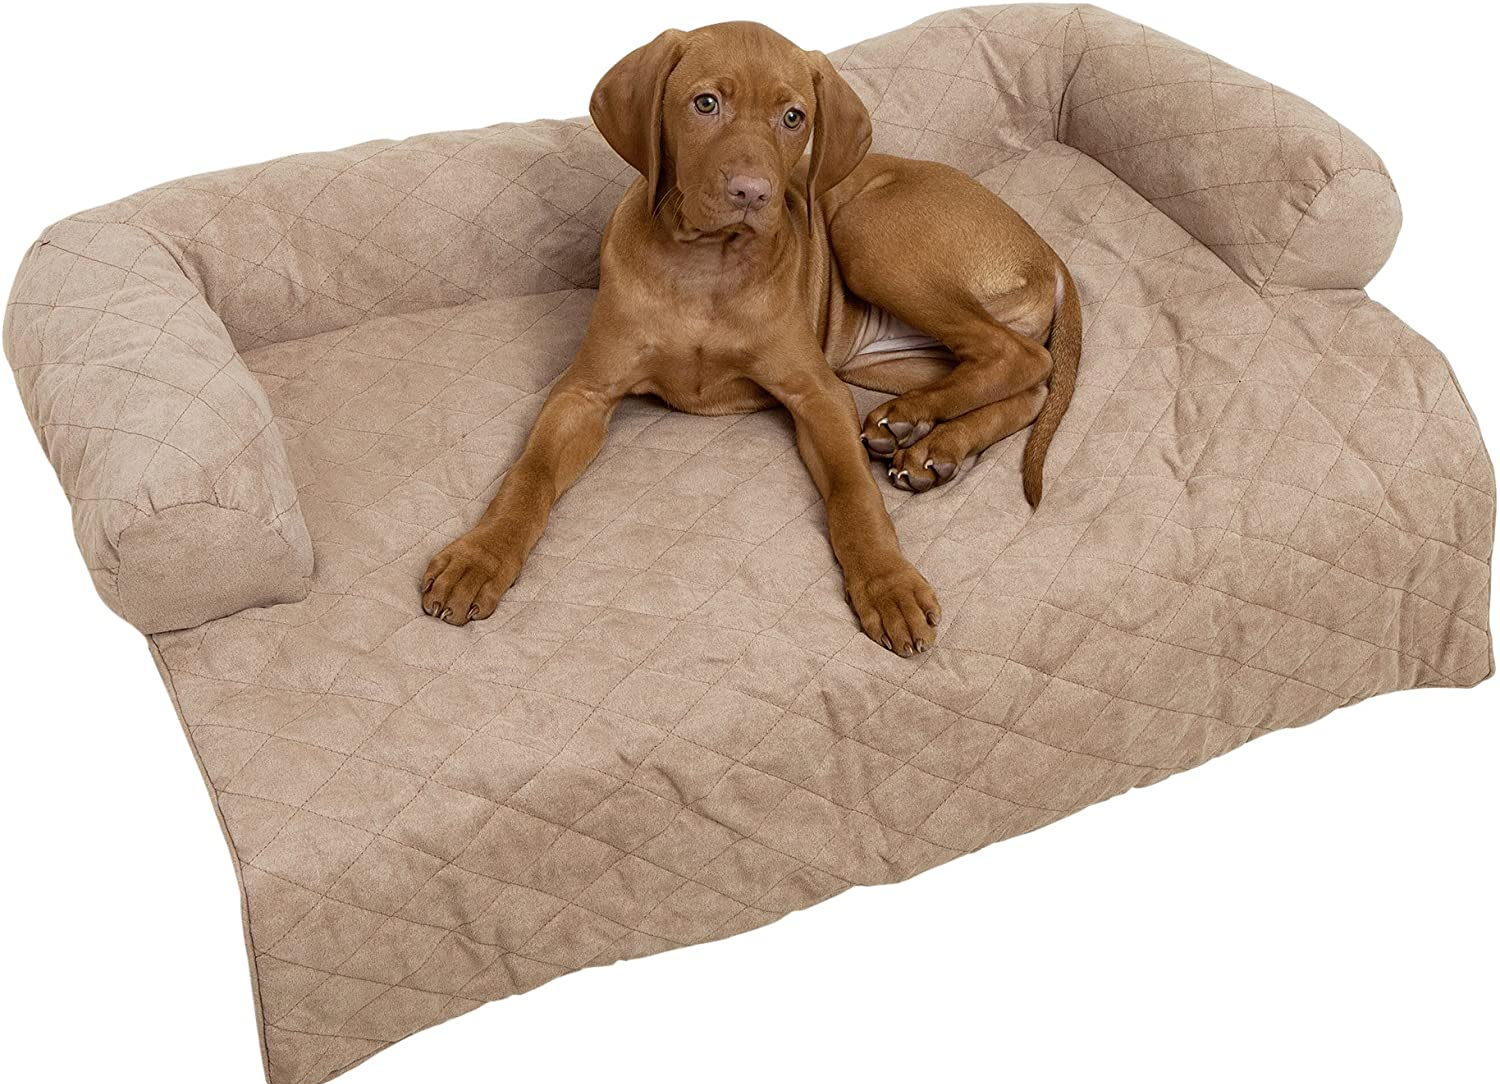 Tier-Couch für das Sofa, Polyester, 87.5 x 10 x 69 cm, Braun